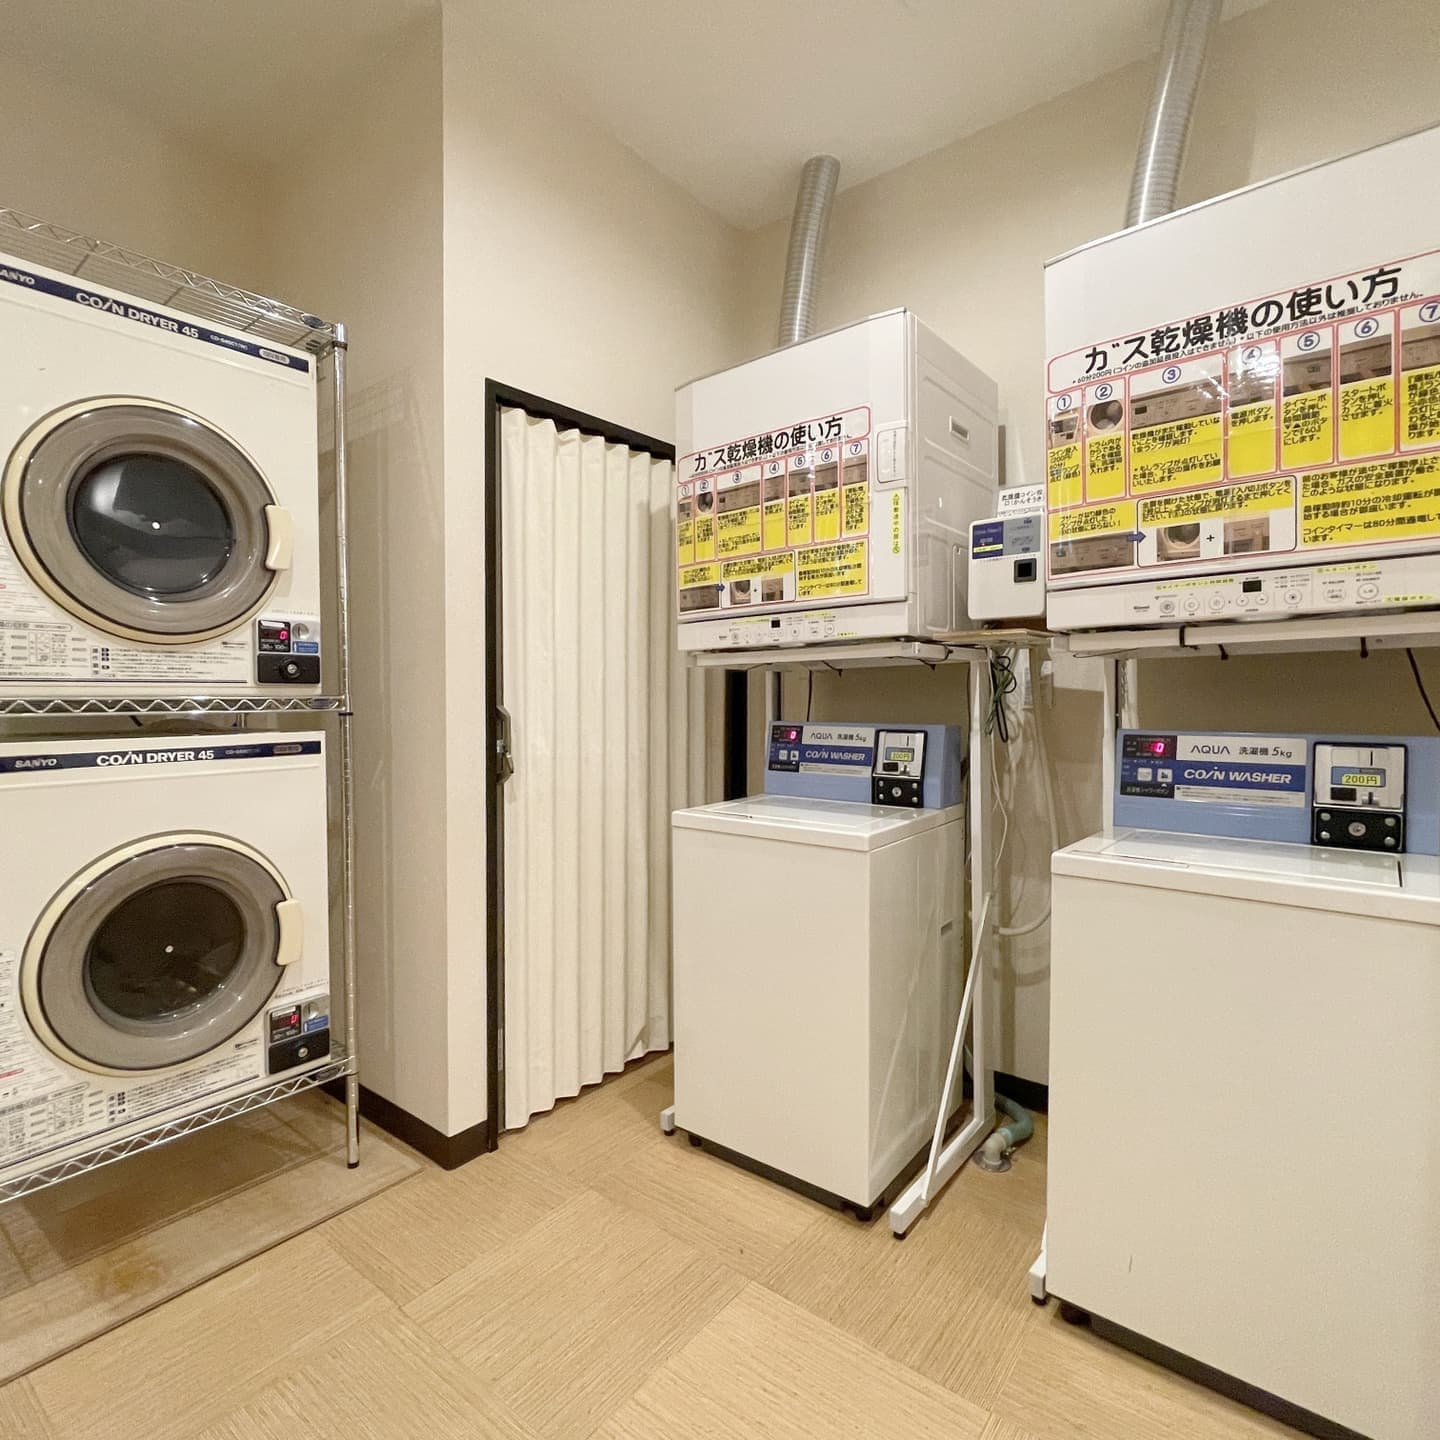 【コインランドリー】 男湯脱衣場内、 洗濯機2台、ガス乾燥機2台 電気乾燥機2台